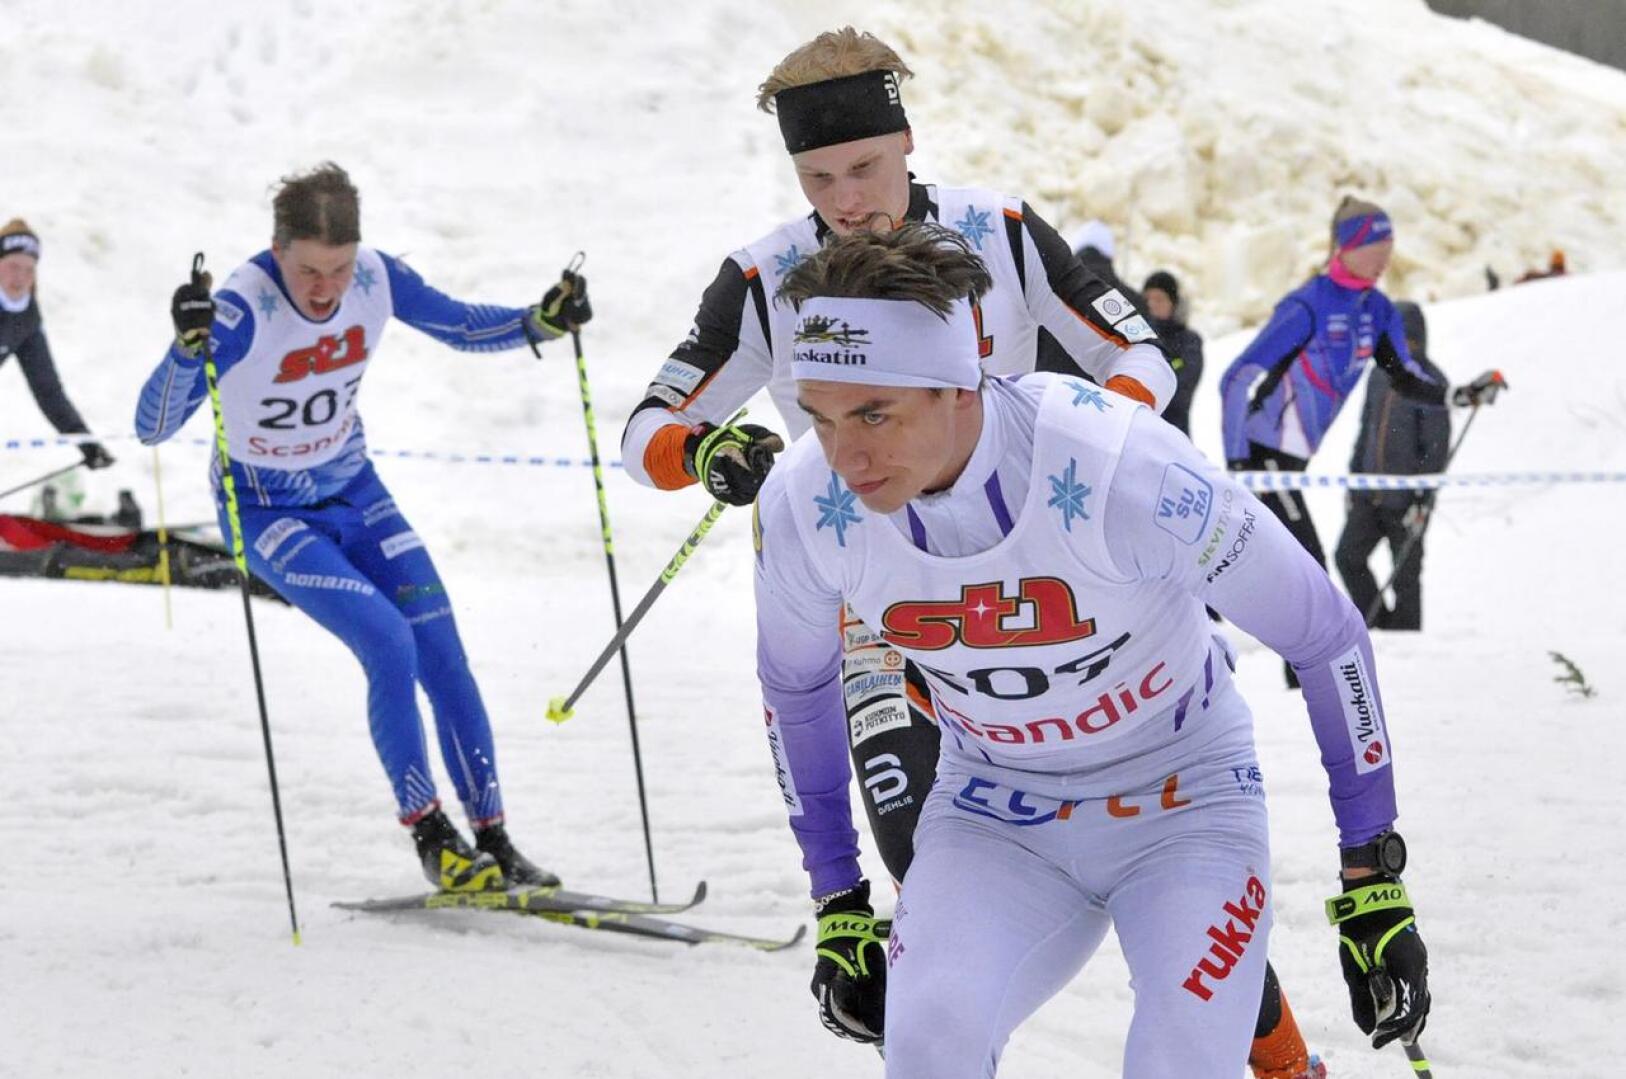 Sieviläislähtöinen Miska Poikkimäki hiihtää ensi viikolla alle 20-vuotiaiden maailmanmestaruuskisoissa Saksassa.